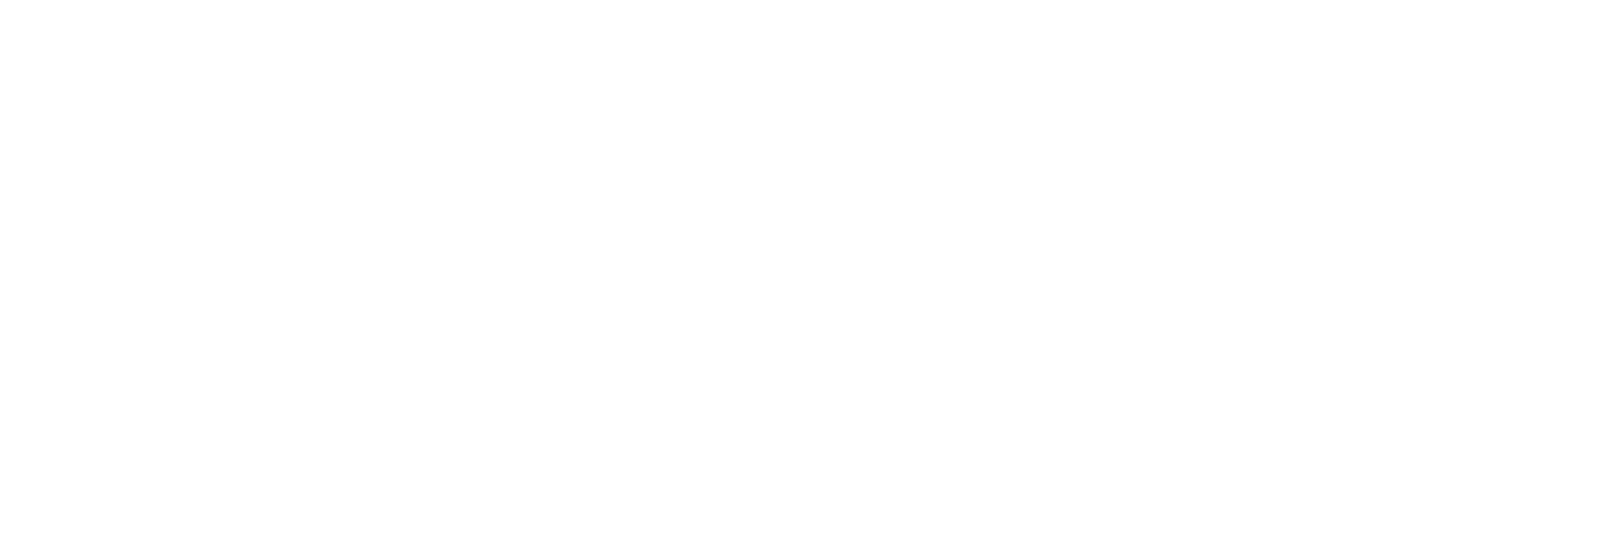 Ovintiv logo grand pour les fonds sombres (PNG transparent)